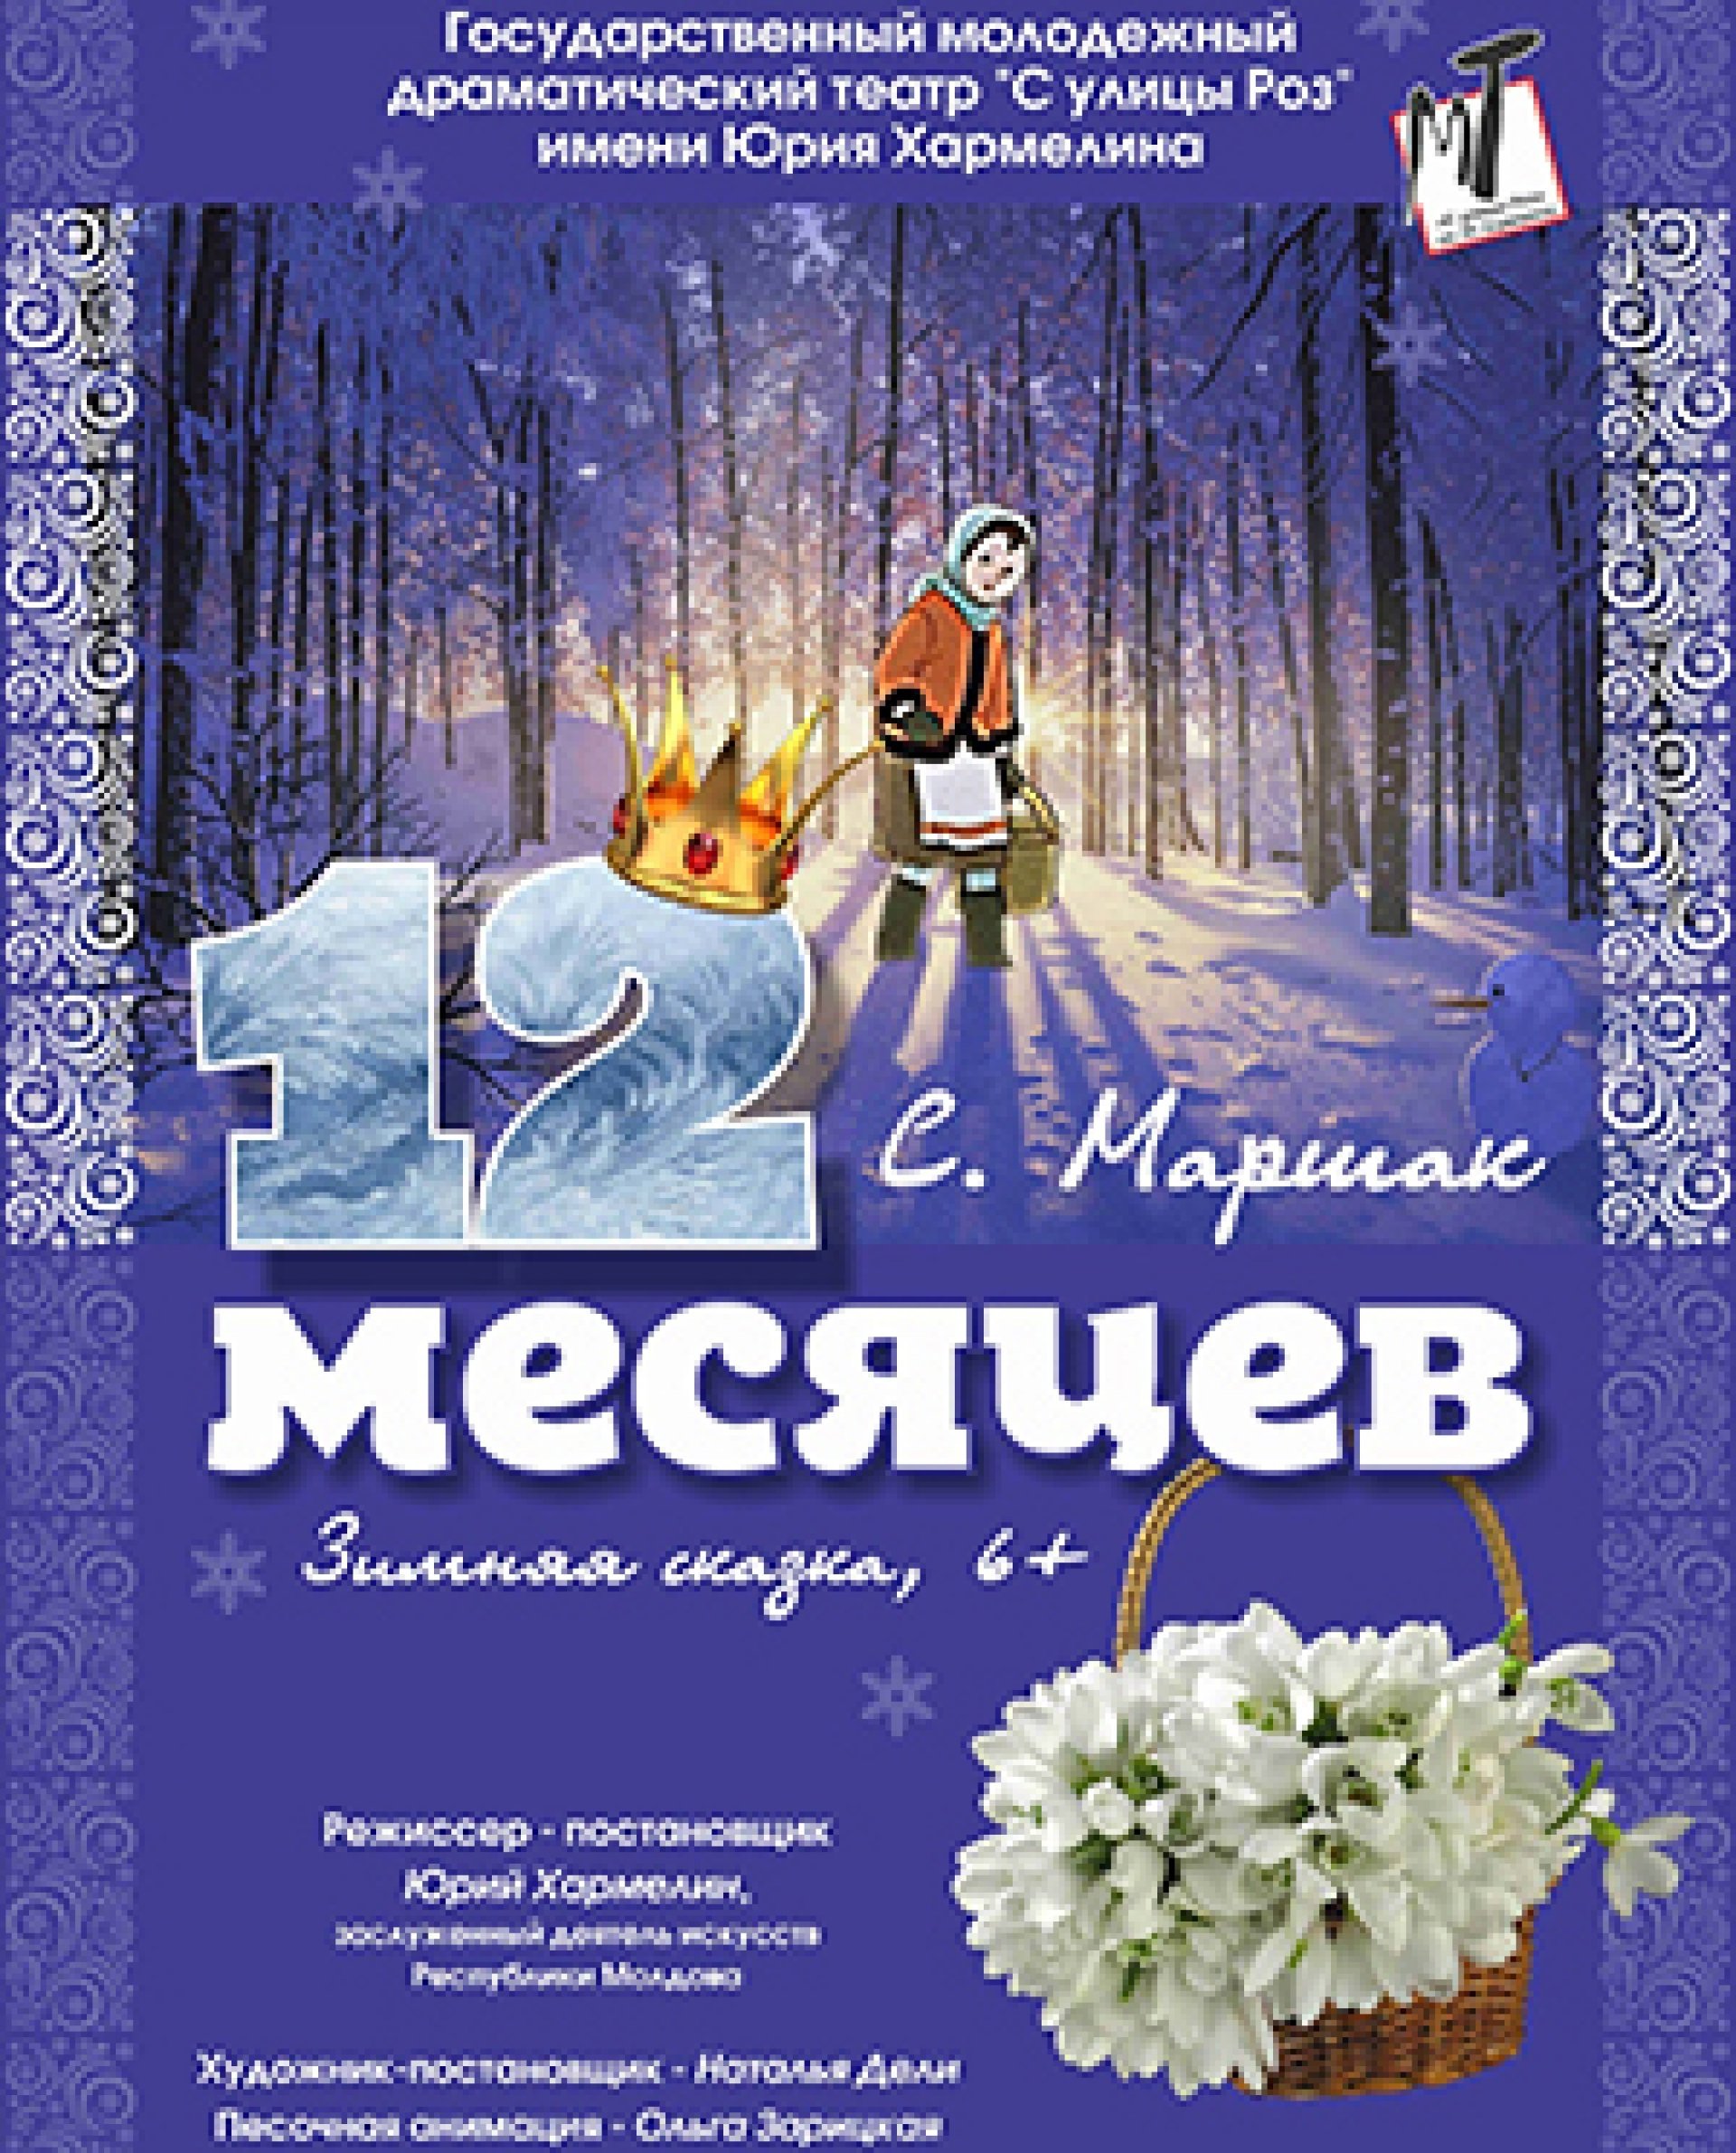 ДВЕНАДЦАТЬ МЕСЯЦЕВ - 15.01.22 в 12-00